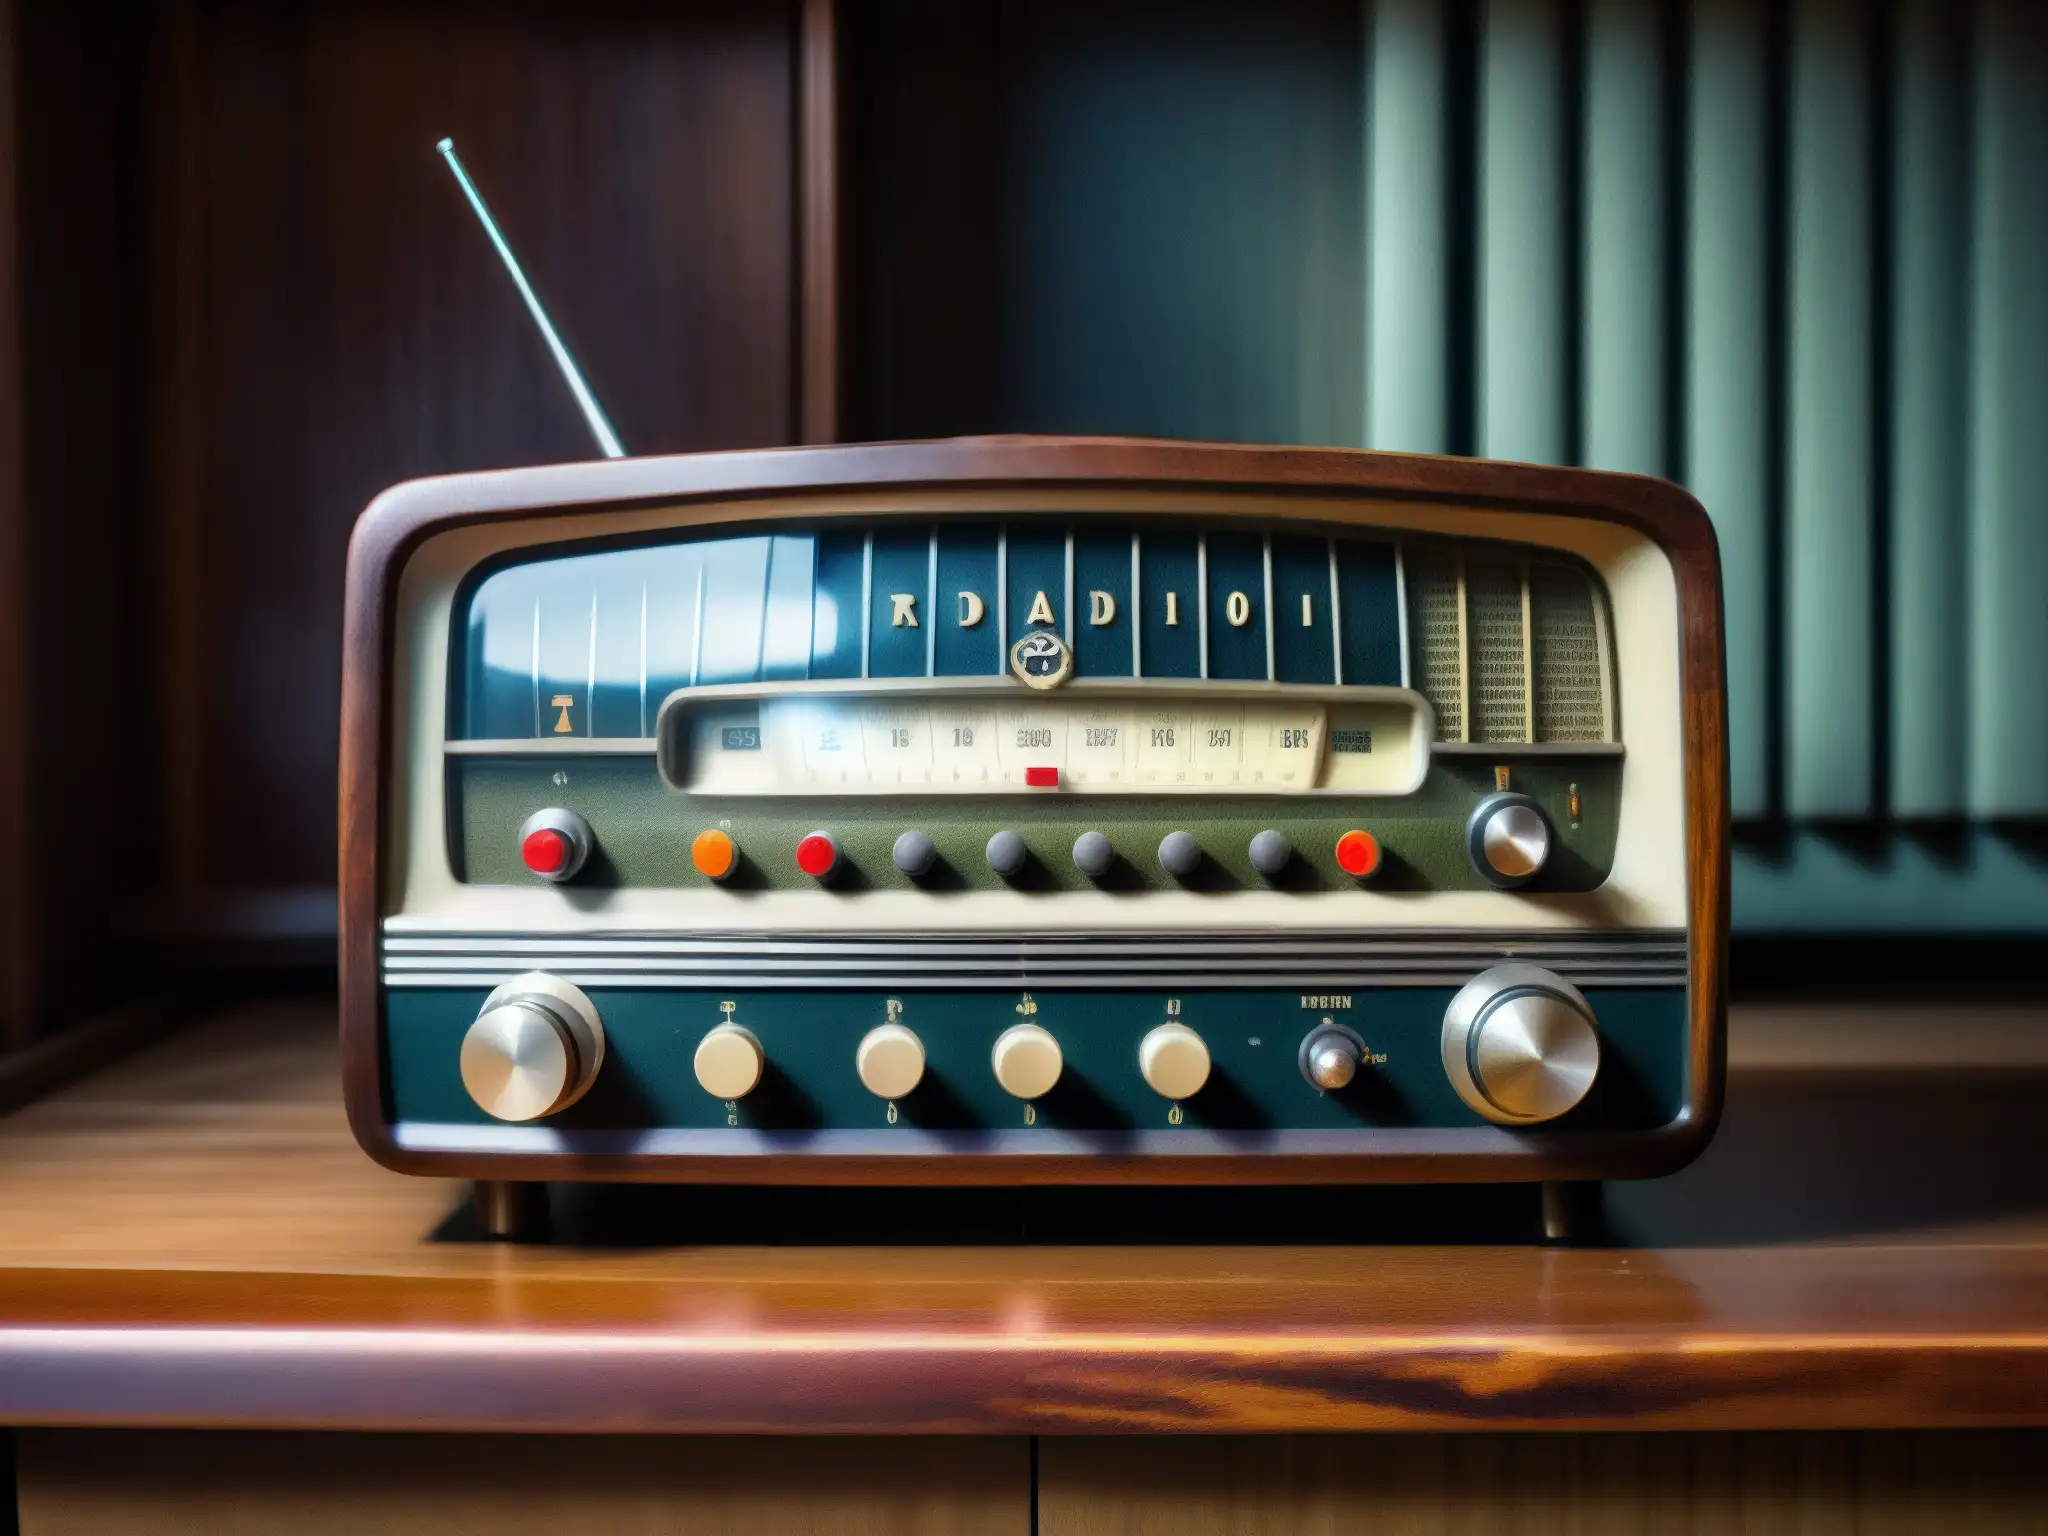 Un viejo radio con diales y botones vintage en una mesa de madera polvorienta en una habitación tenue